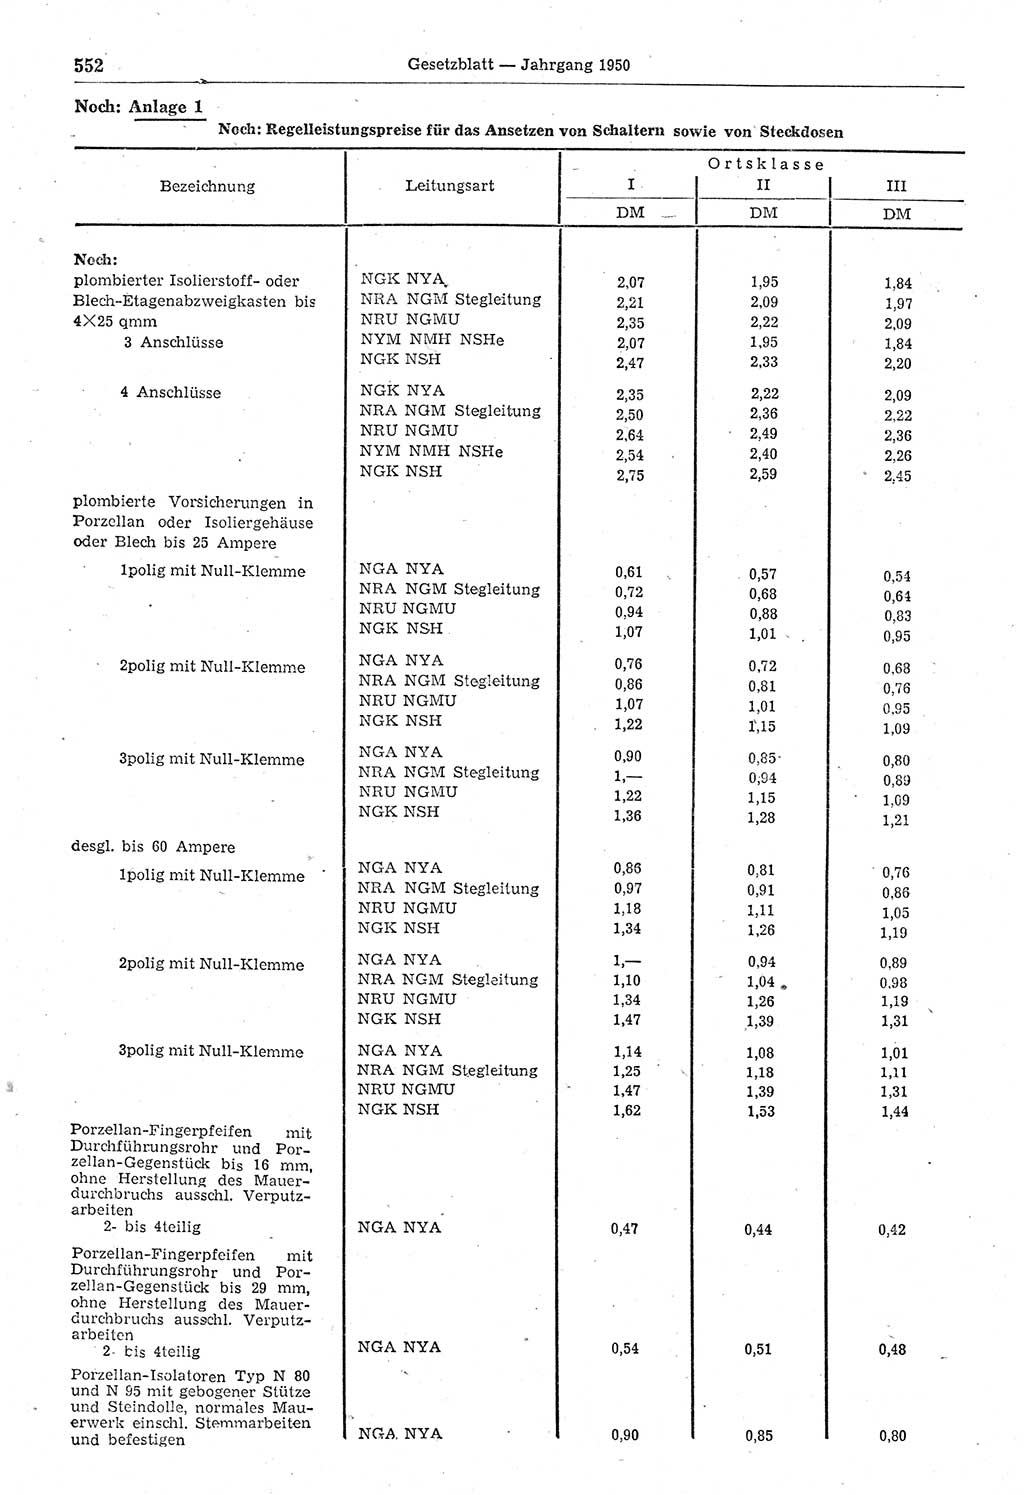 Gesetzblatt (GBl.) der Deutschen Demokratischen Republik (DDR) 1950, Seite 552 (GBl. DDR 1950, S. 552)